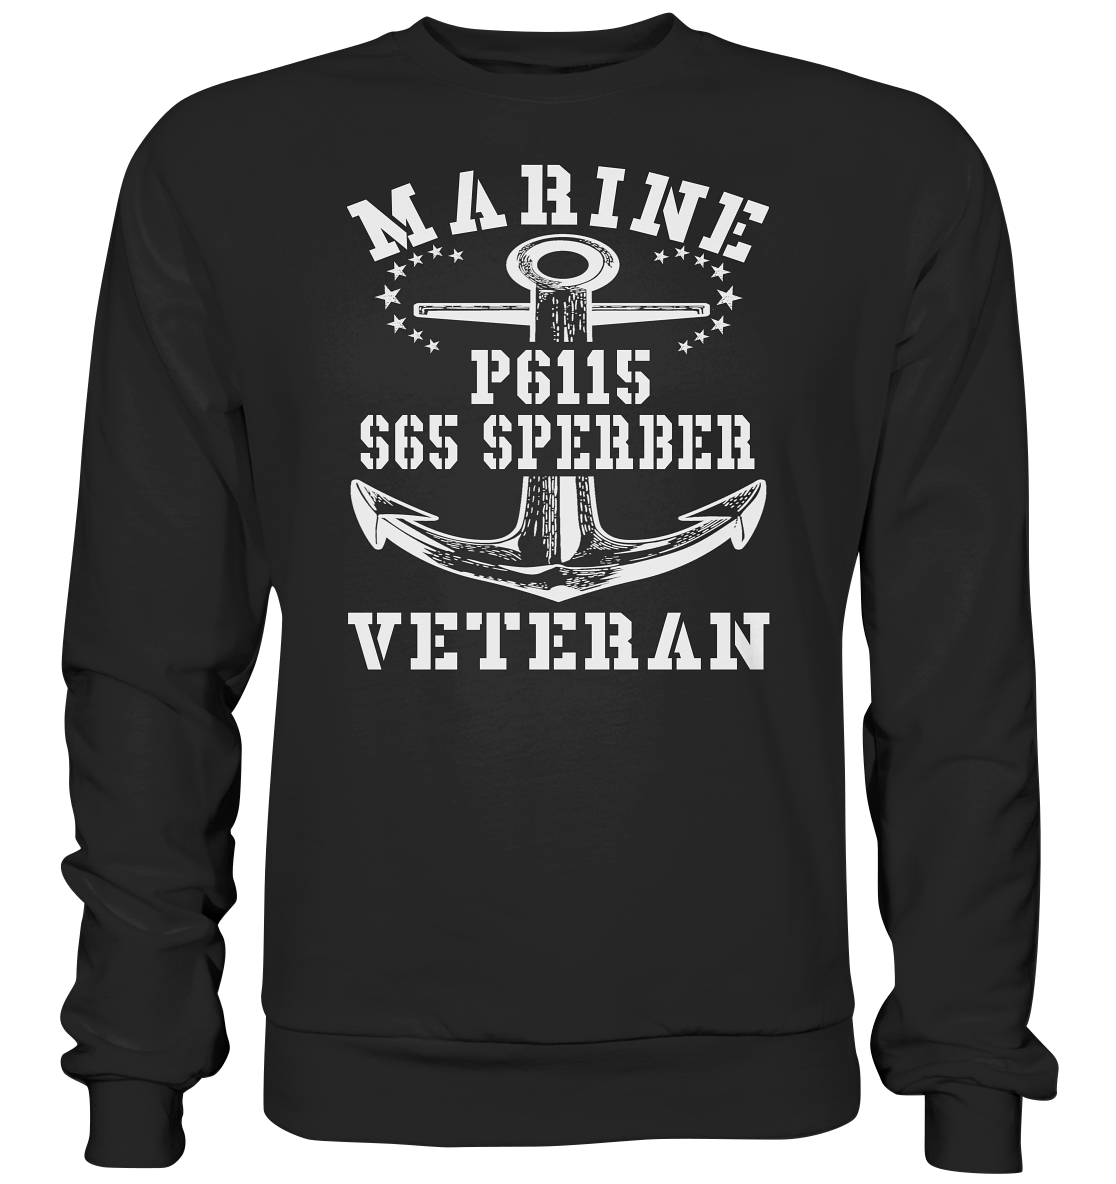 FK-Schnellboot P6115 SPERBER Marine Veteran - Premium Sweatshirt